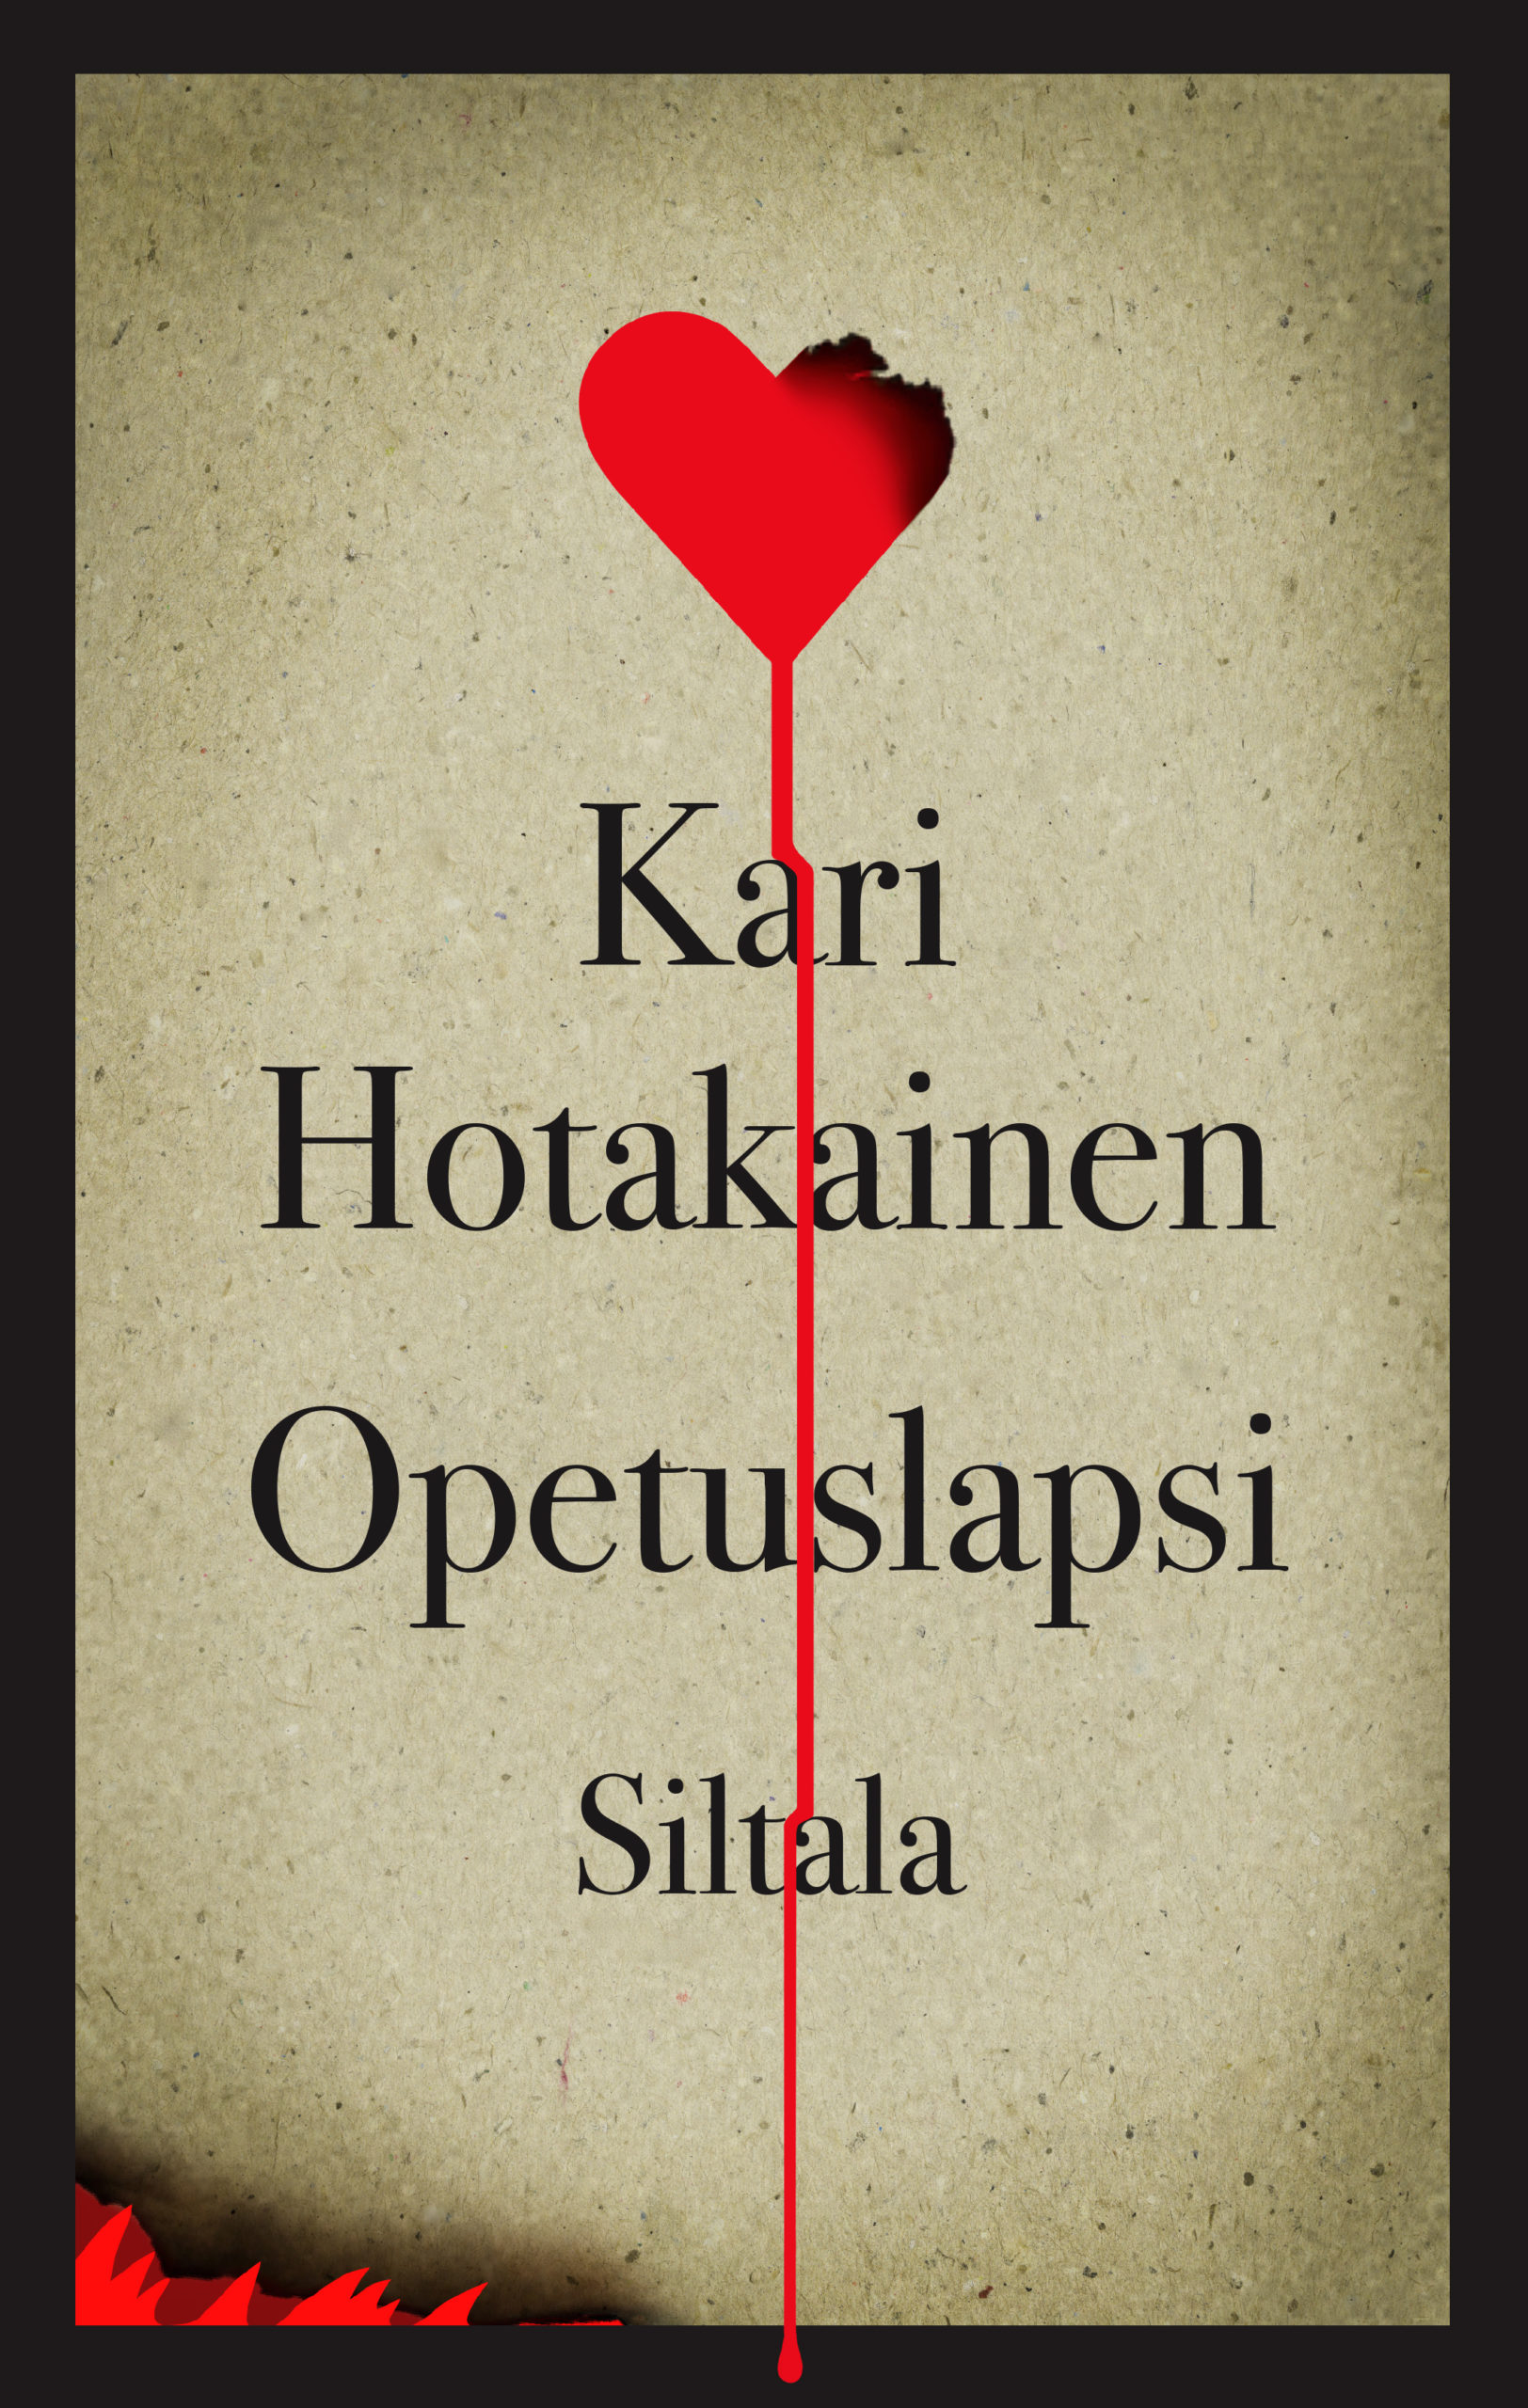 Kari Hotakaisen kirjan Opetuslapsi kansi, jossa on myös kustantajan nimi Siltala.